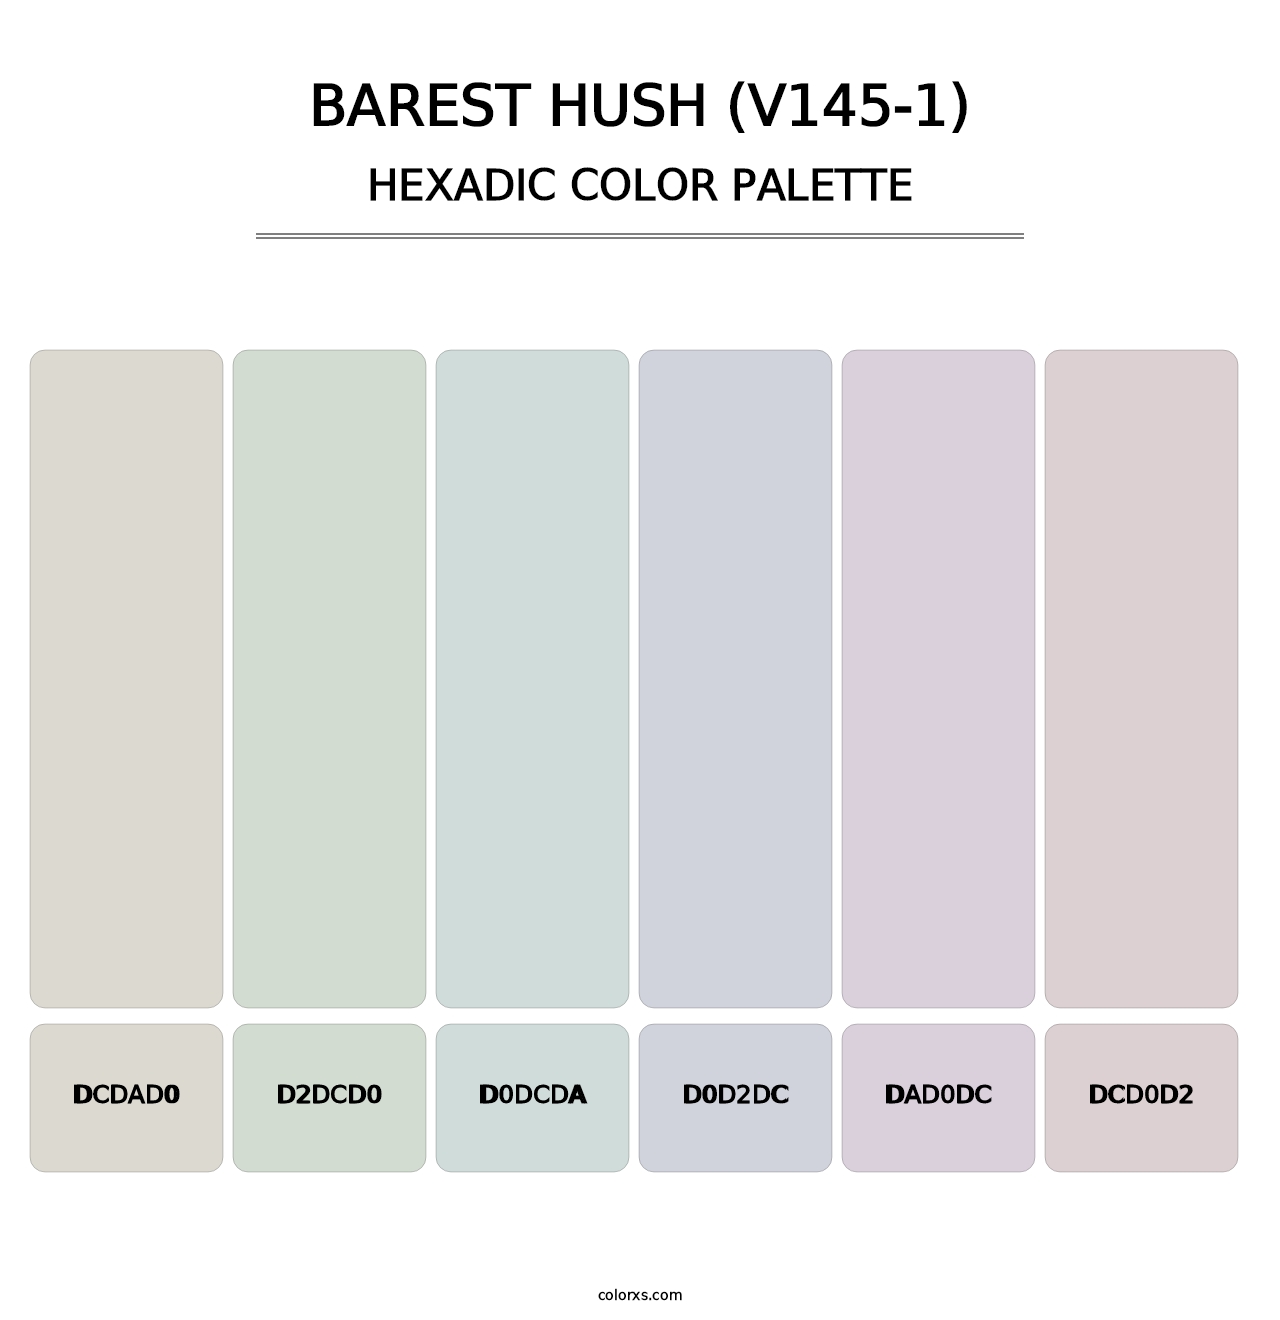 Barest Hush (V145-1) - Hexadic Color Palette